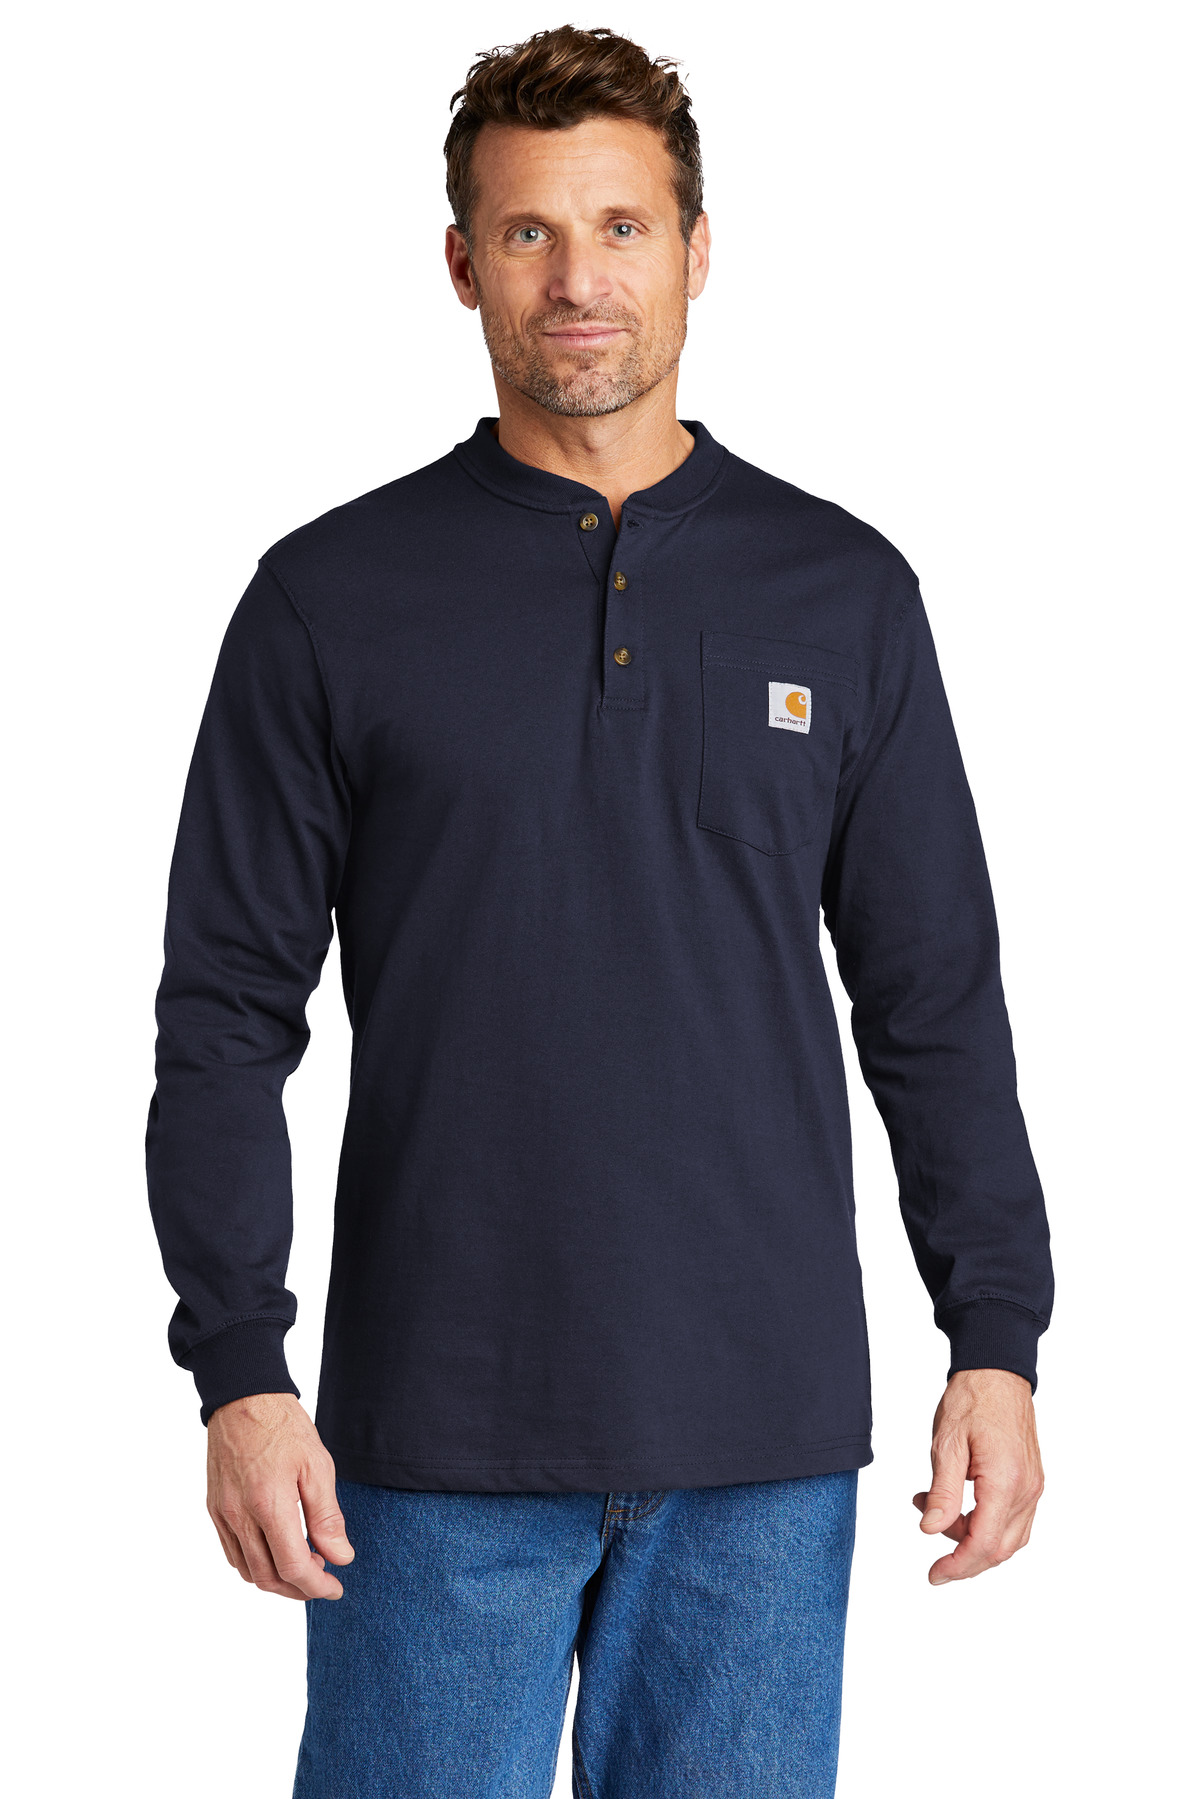 Carhartt Long Sleeve Henley T-Shirt-Carhartt